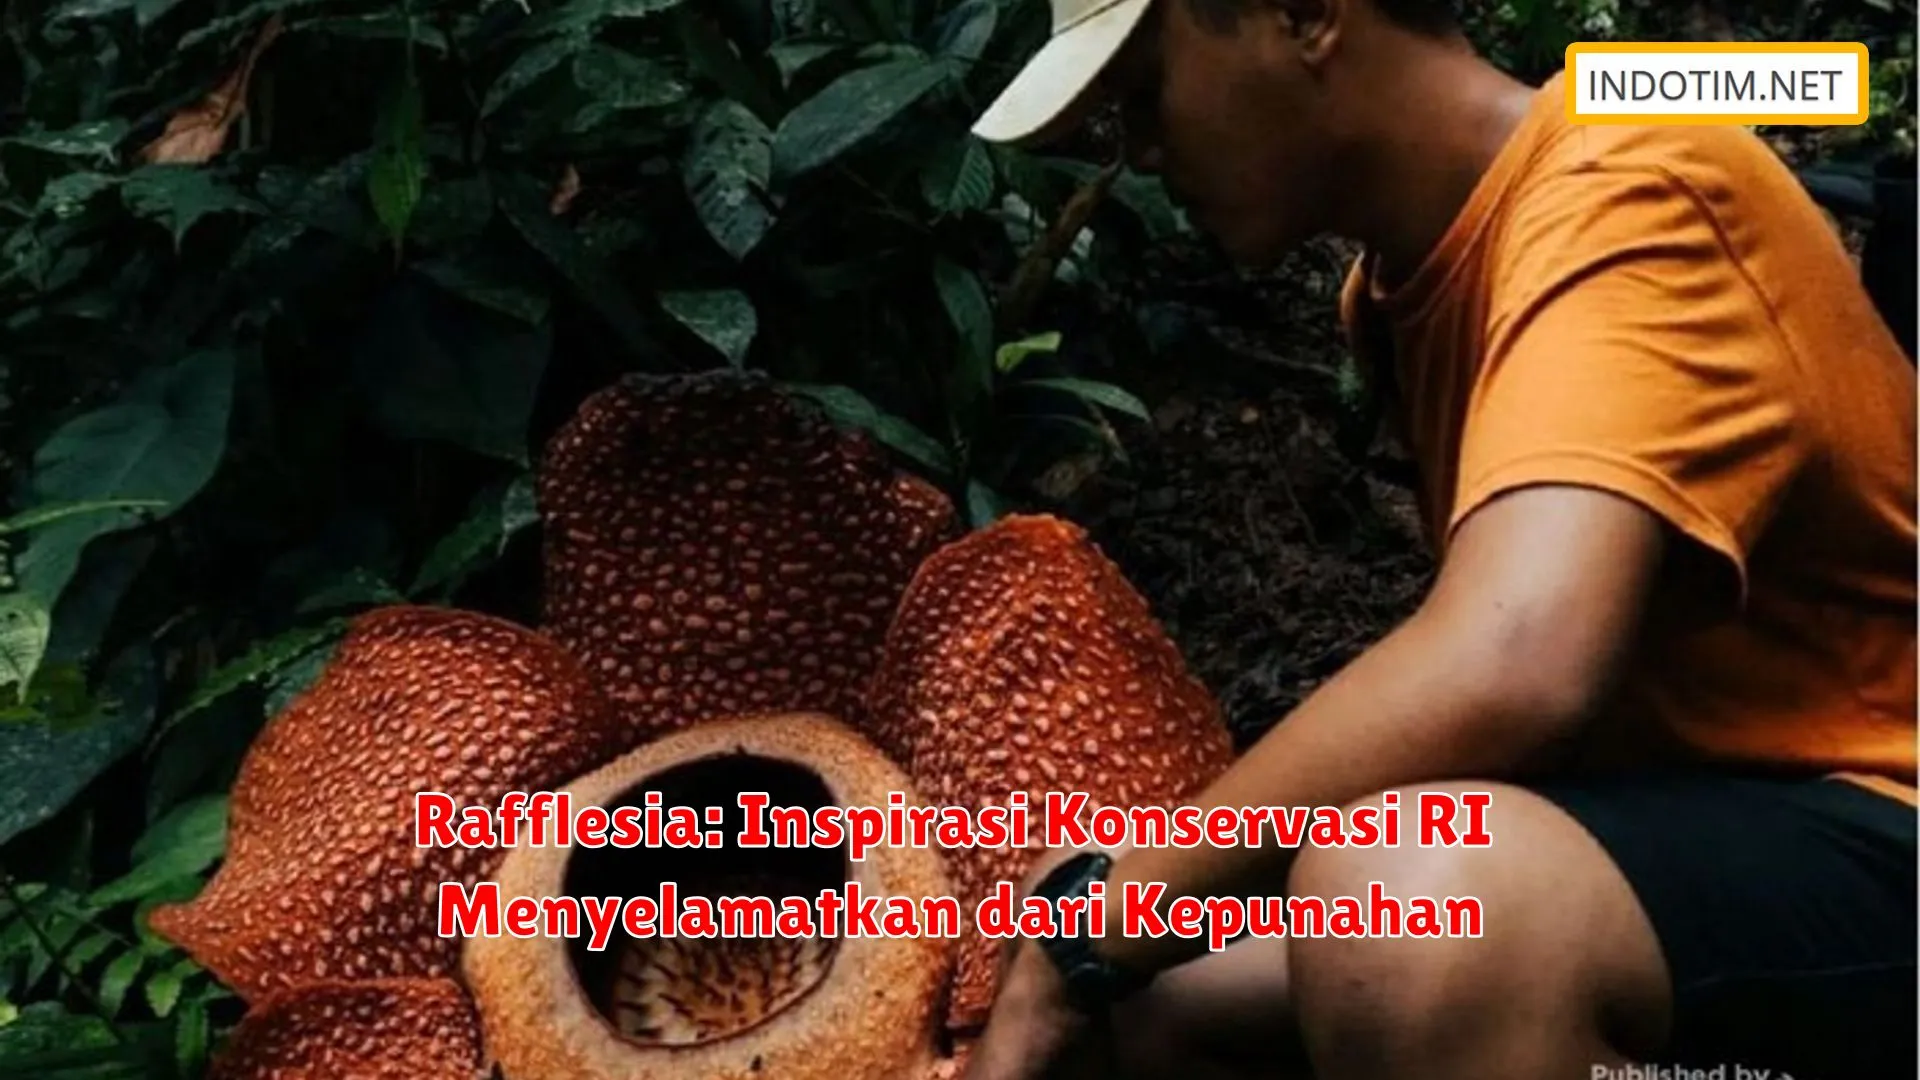 Rafflesia: Inspirasi Konservasi RI Menyelamatkan dari Kepunahan